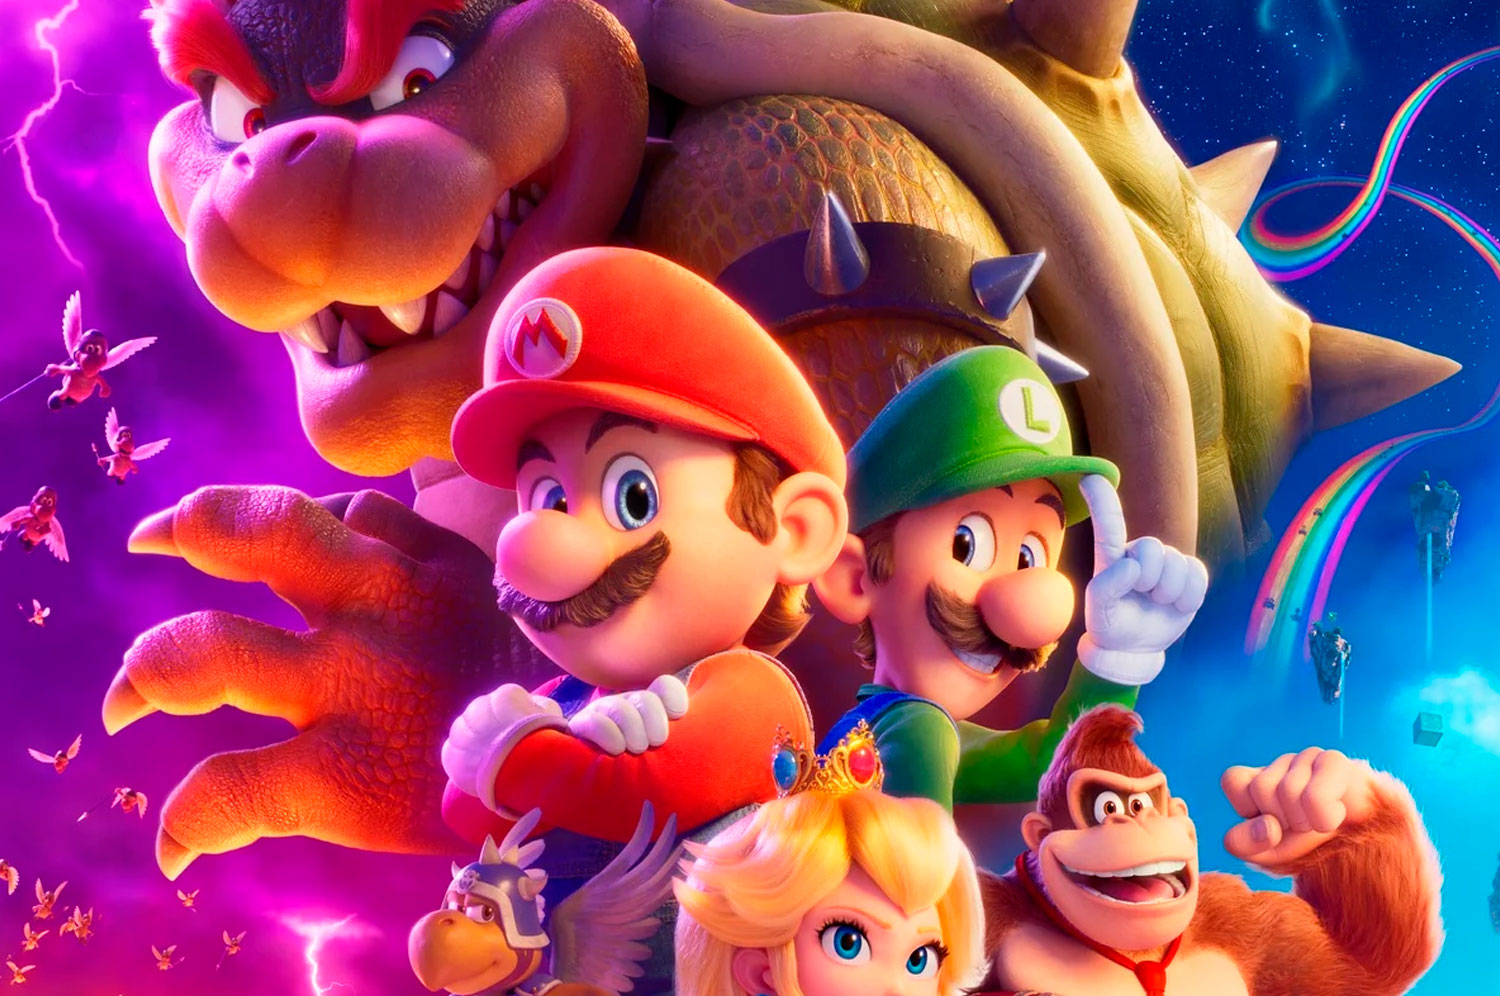 Assistir “Super Mario Bros” online quando e onde o filme estará